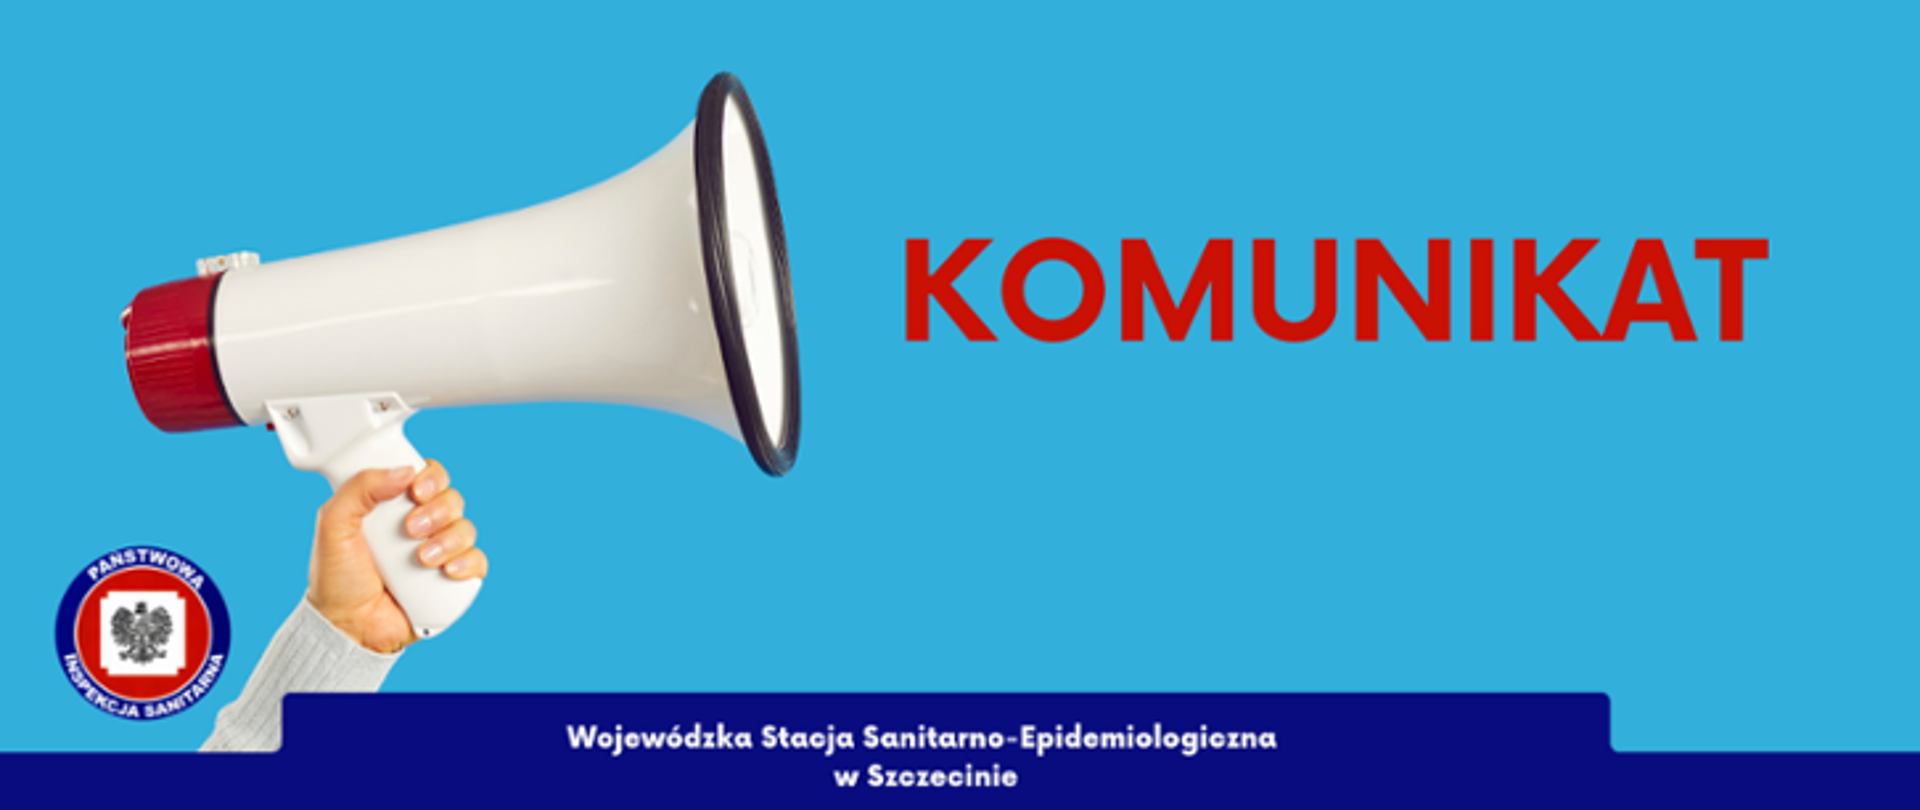 Komunikat Wojewódzkiej Stacji Sanitarno-Epidemiologicznej w Szczecinie